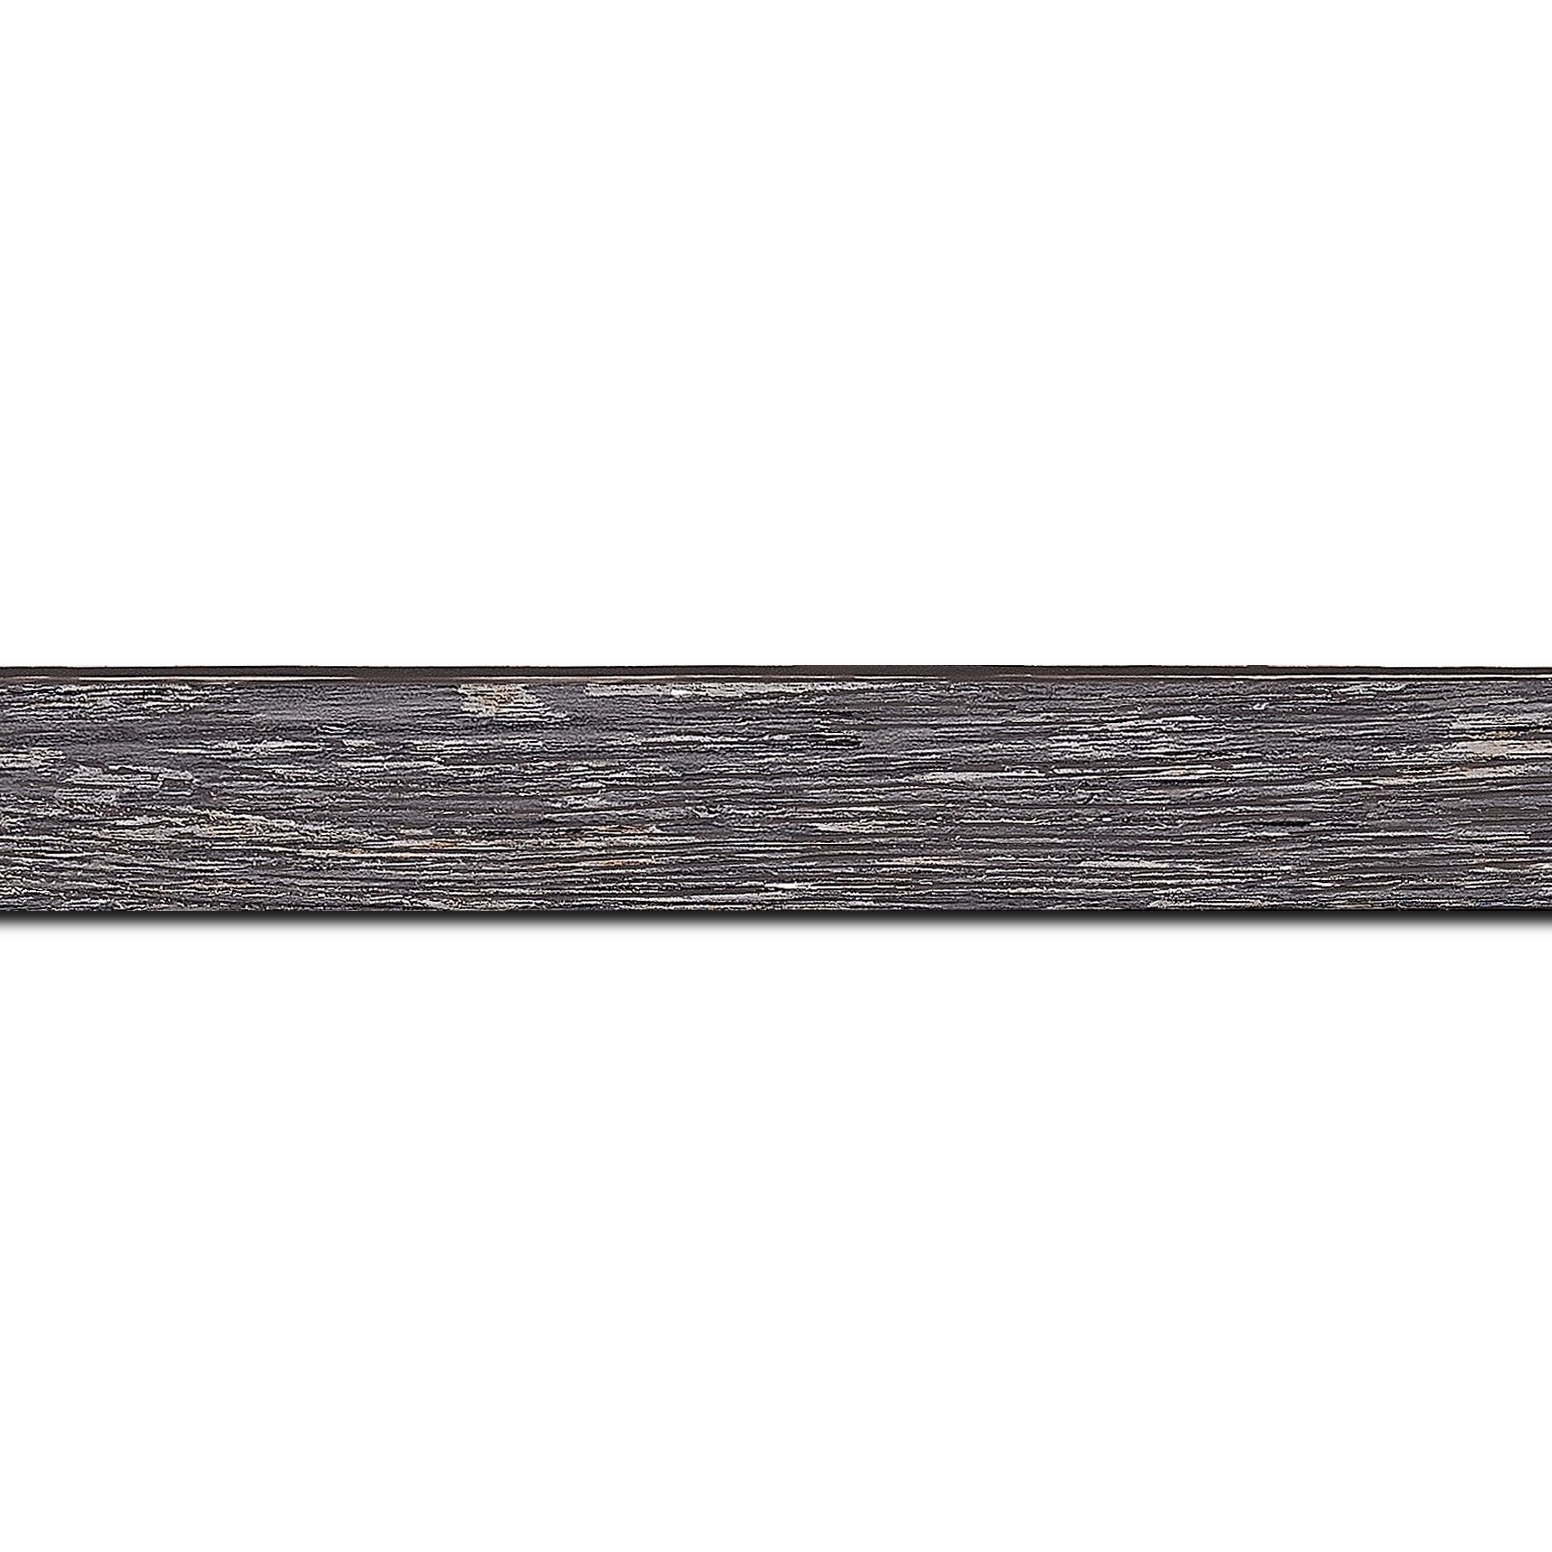 Pack par 12m, bois profil arrondi en pente plongeant largeur 2.4cm couleur gris  finition veinée, reflet argenté(longueur baguette pouvant varier entre 2.40m et 3m selon arrivage des bois)